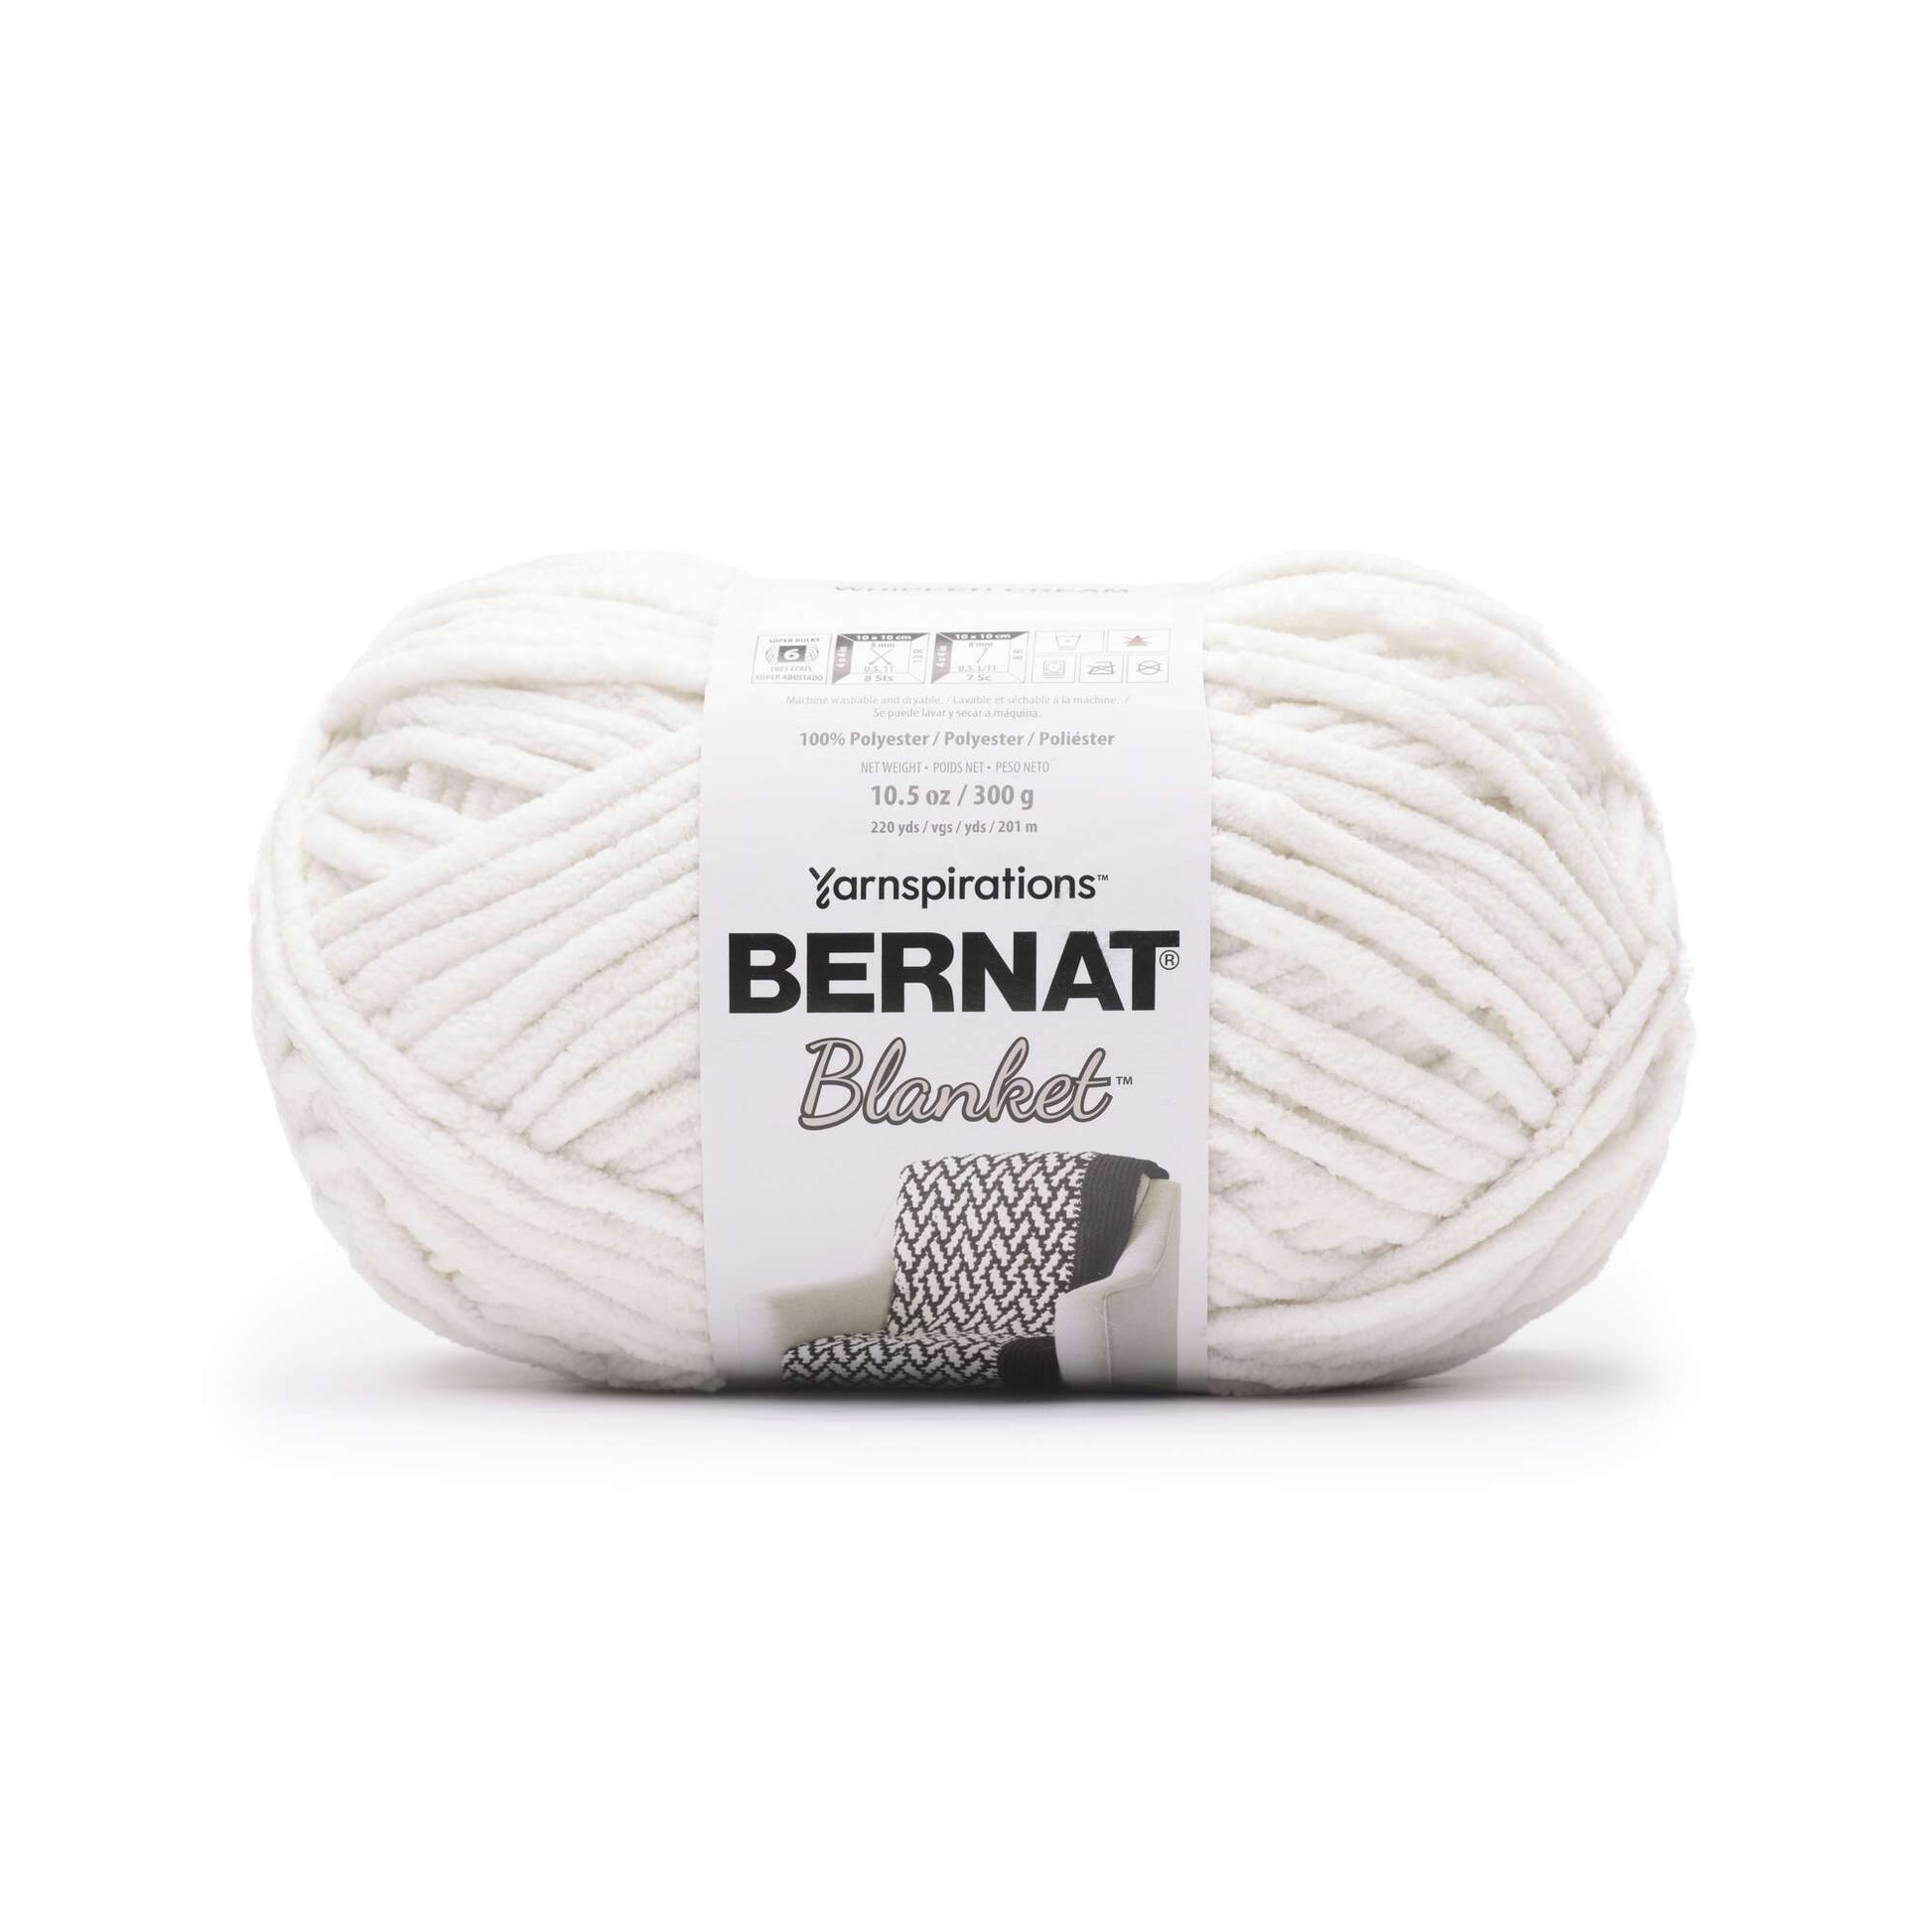 Bernat Blanket Yarn (300g/10.5oz) Whipped Cream